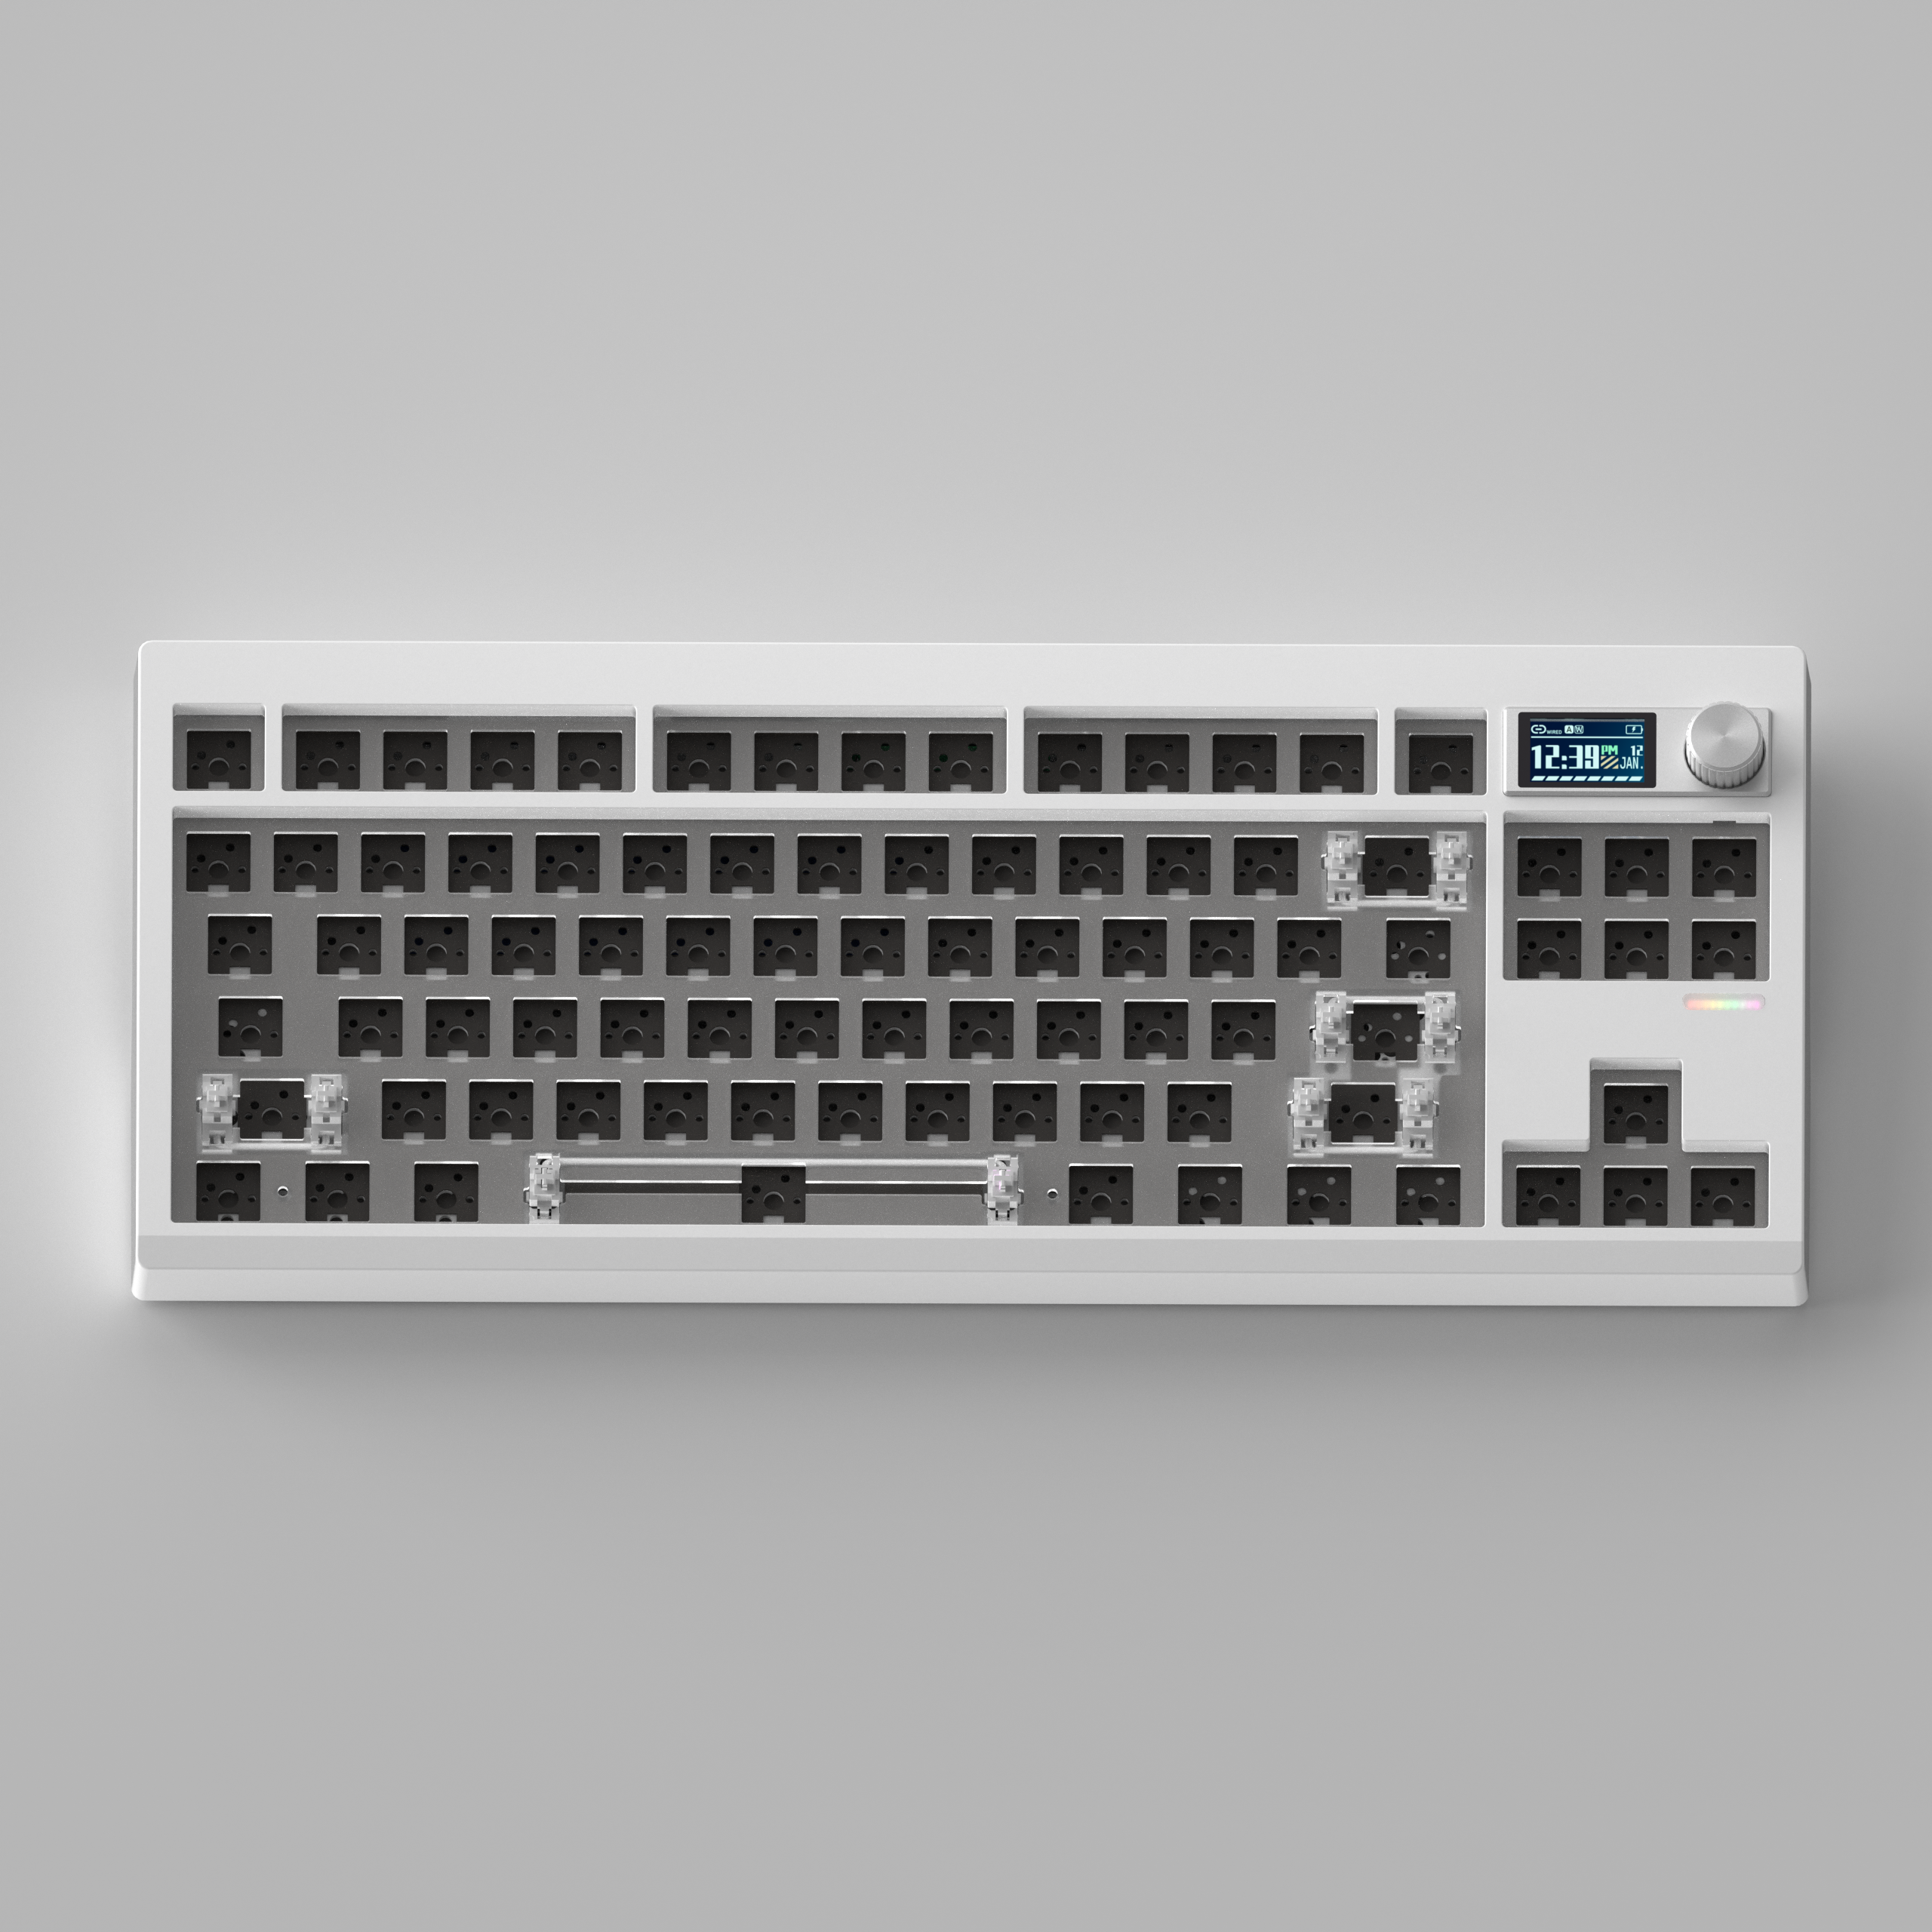 GMK87 Mechanical Keyboard Kit Gaming Keyboard 87Keys Silent